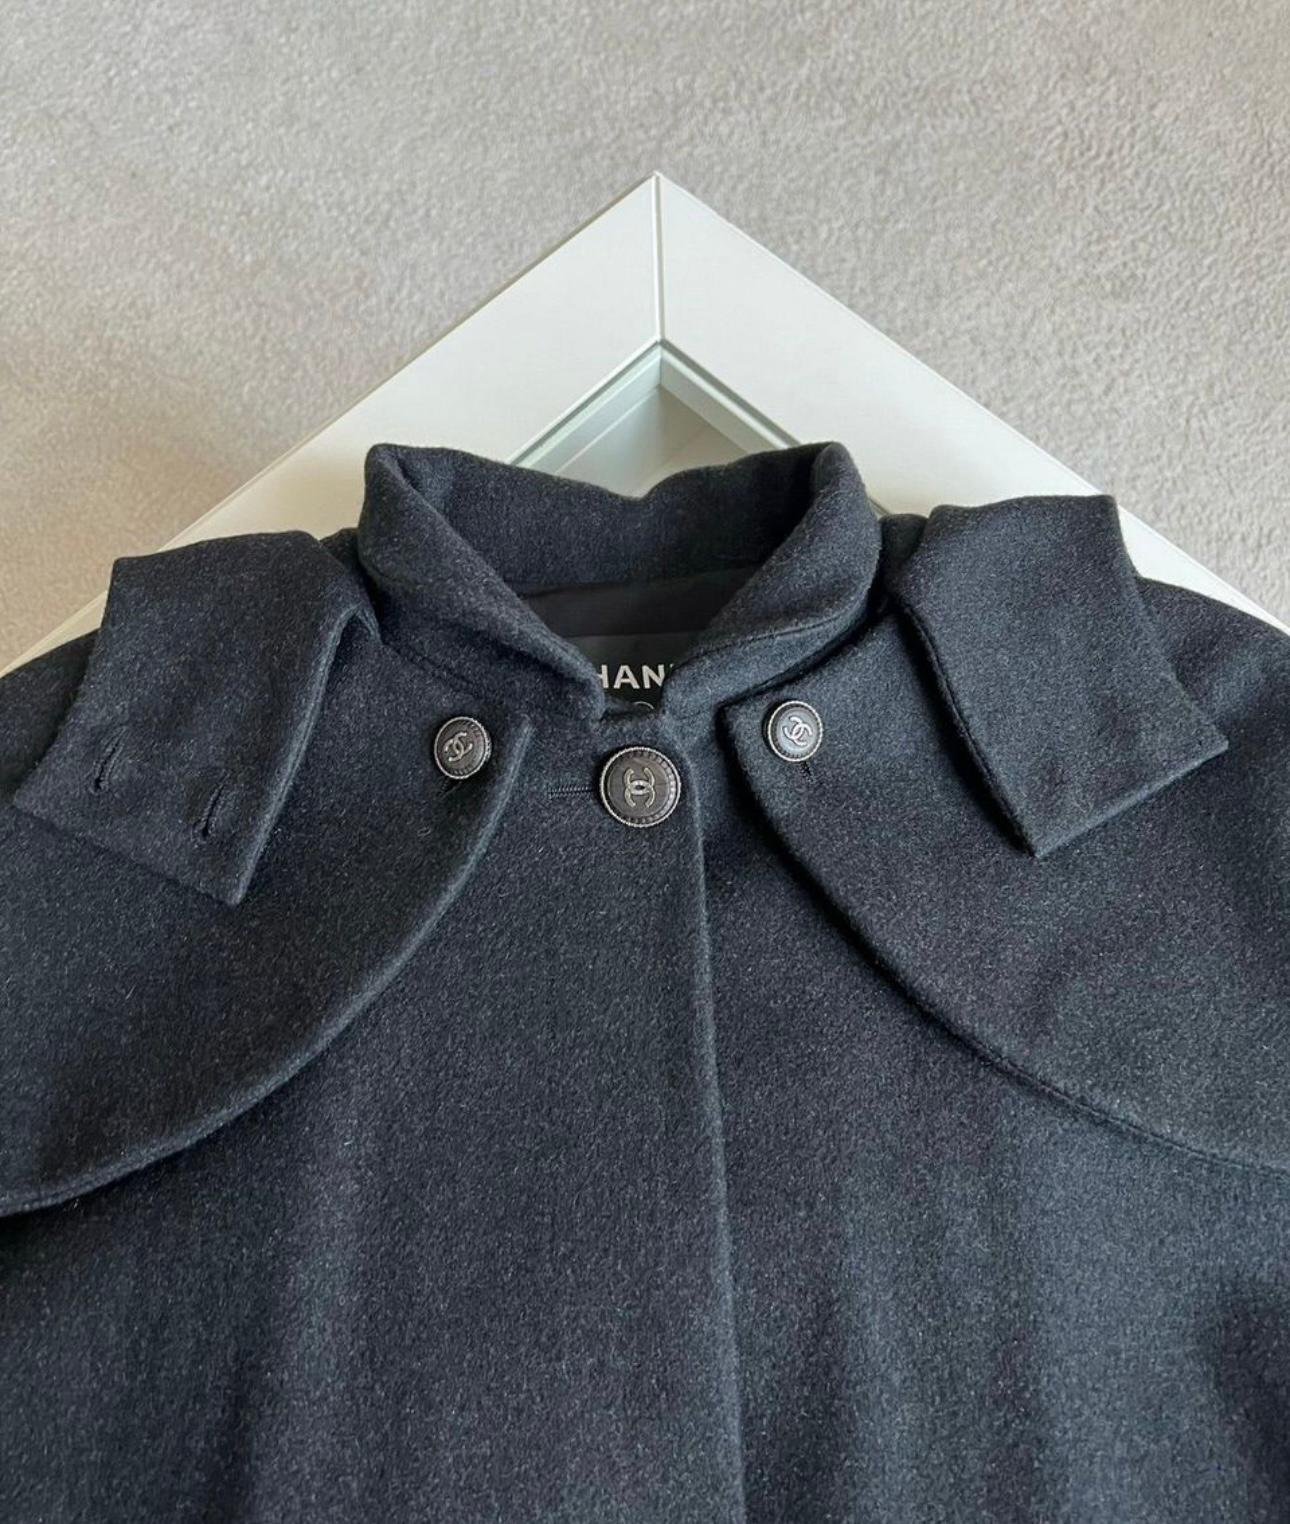 Women's or Men's Chanel Rare CC Buttons Black Cashmere Cape Jacket